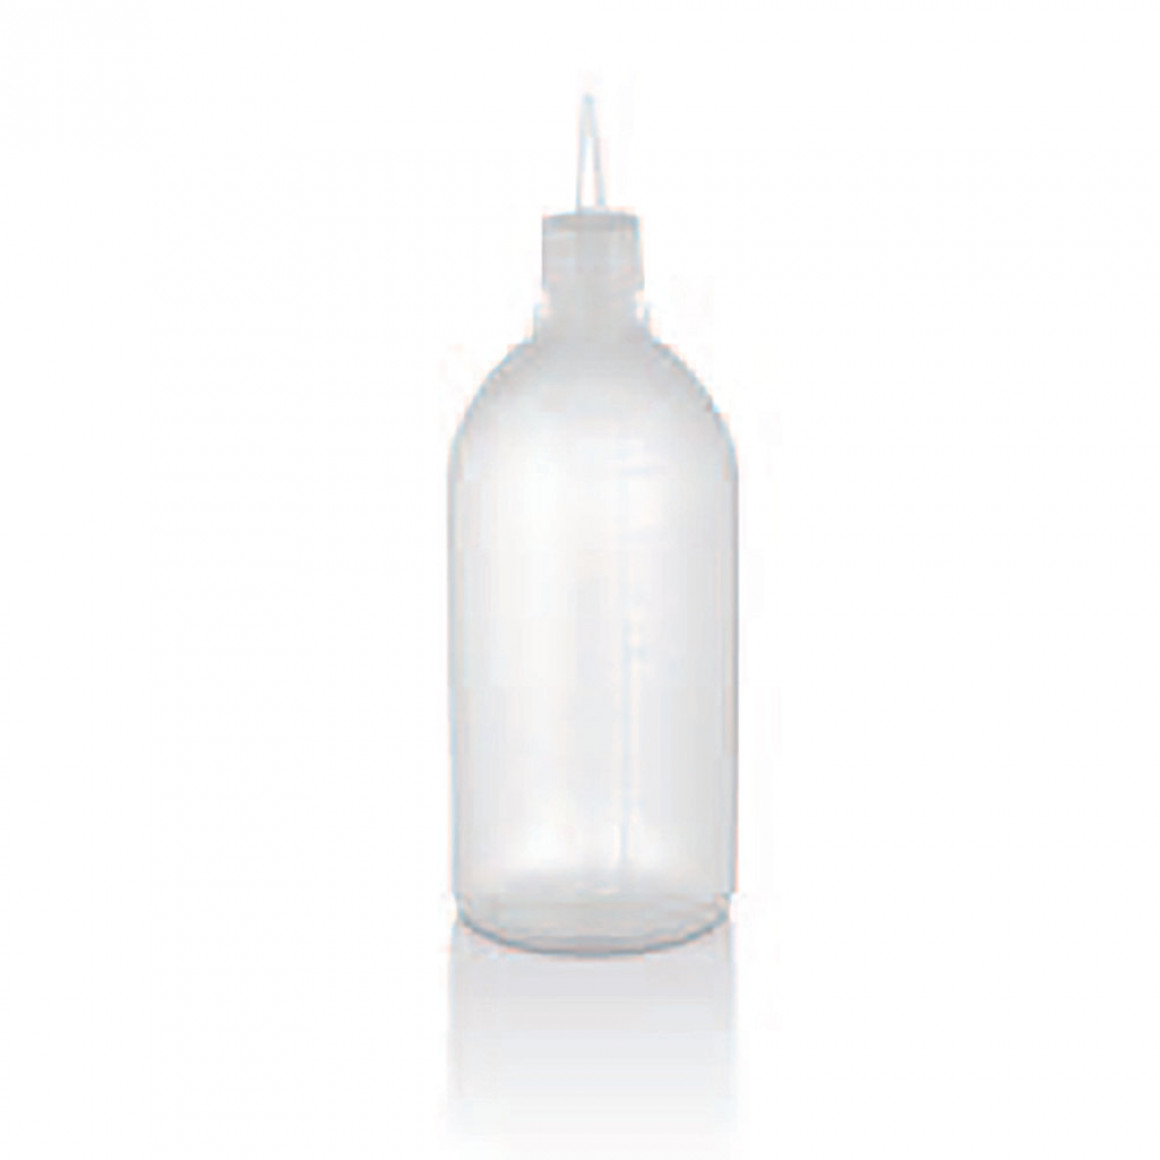 Squeeze bottle dispenser for oil 1000 ml